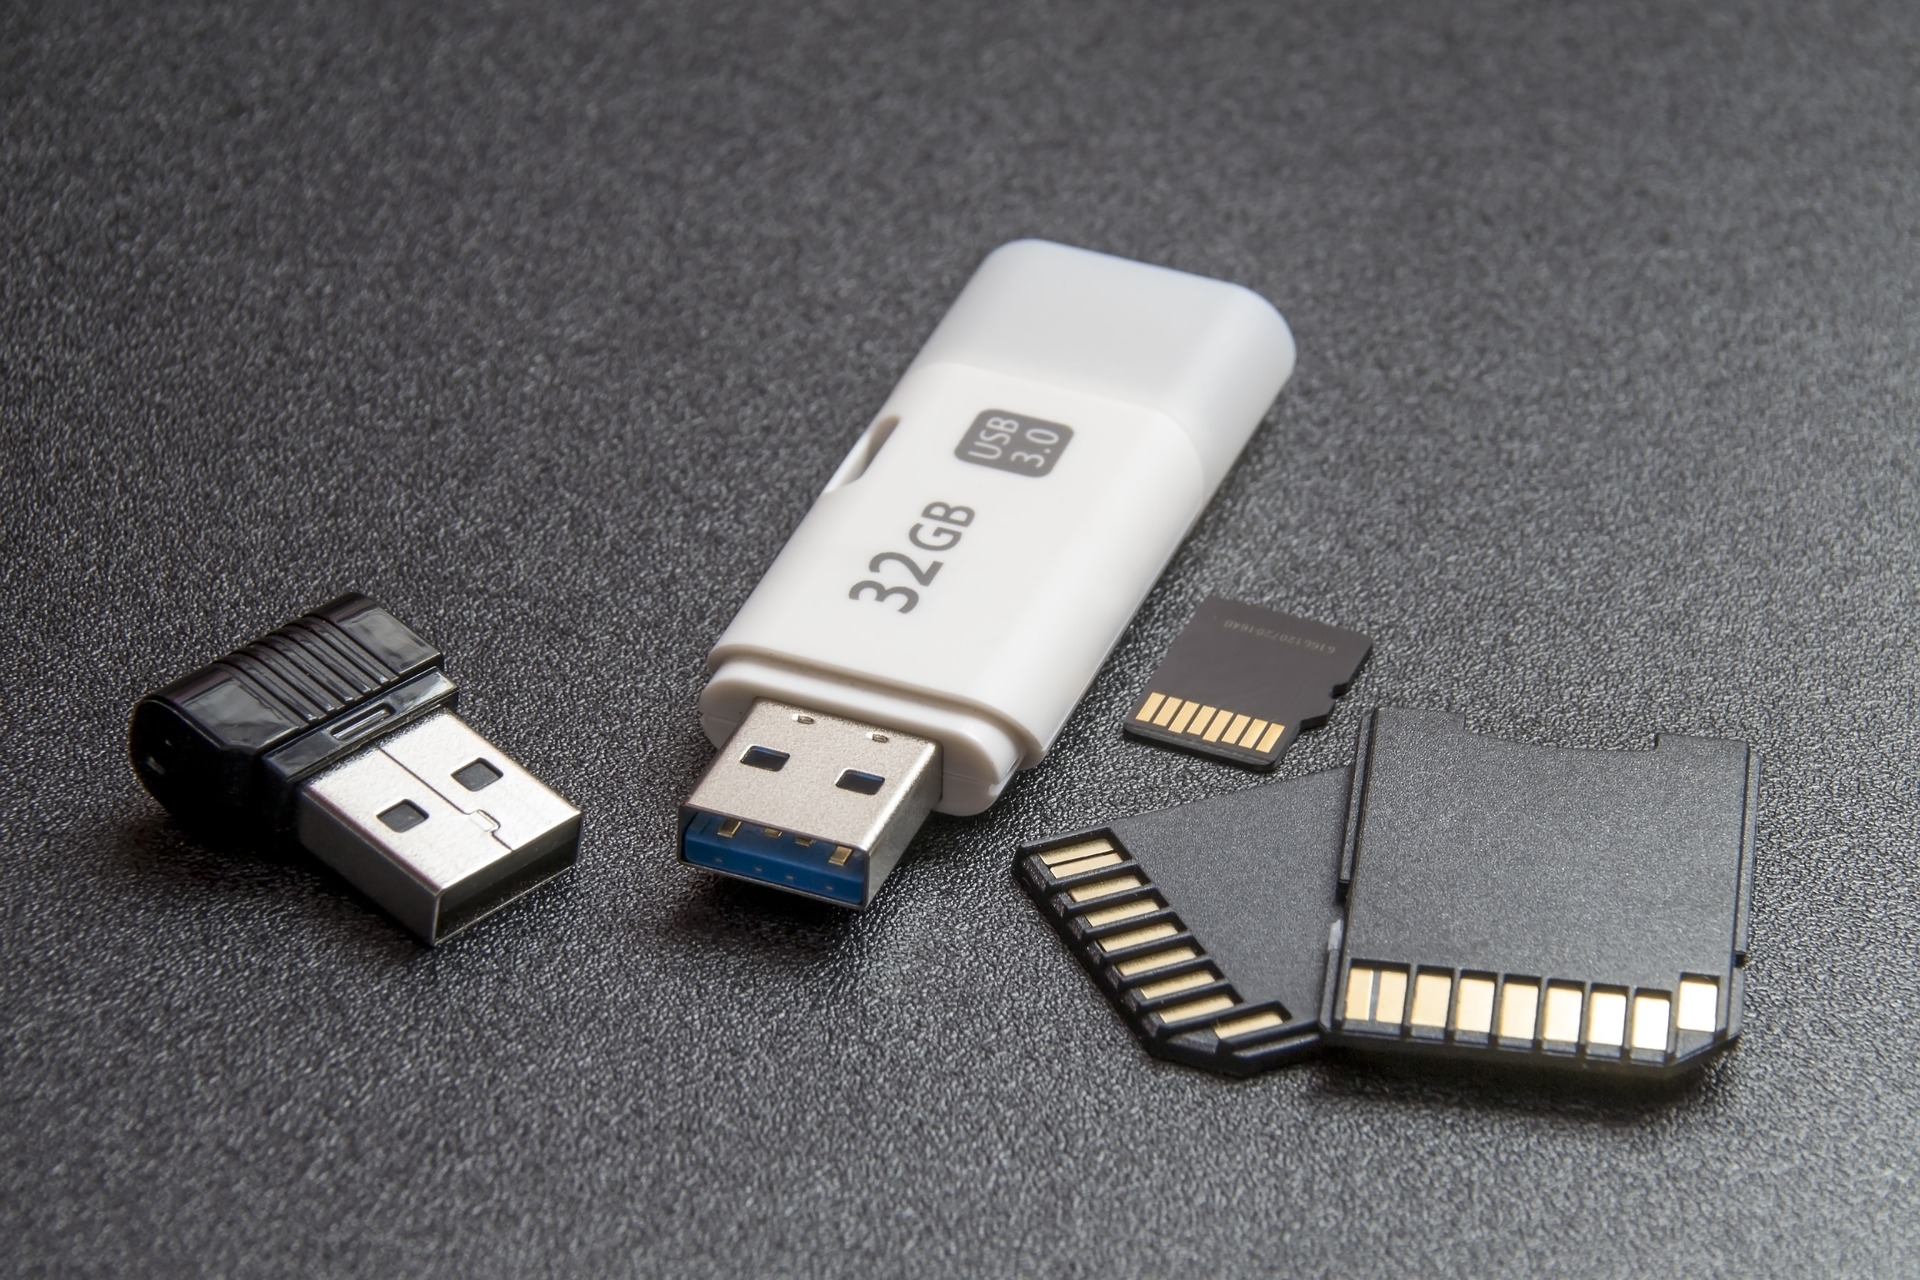 Busque um outro pendrive USB como opção para solucionar o problema.
Tente utilizar um dispositivo de armazenamento USB diferente para a instalação do sistema operacional.